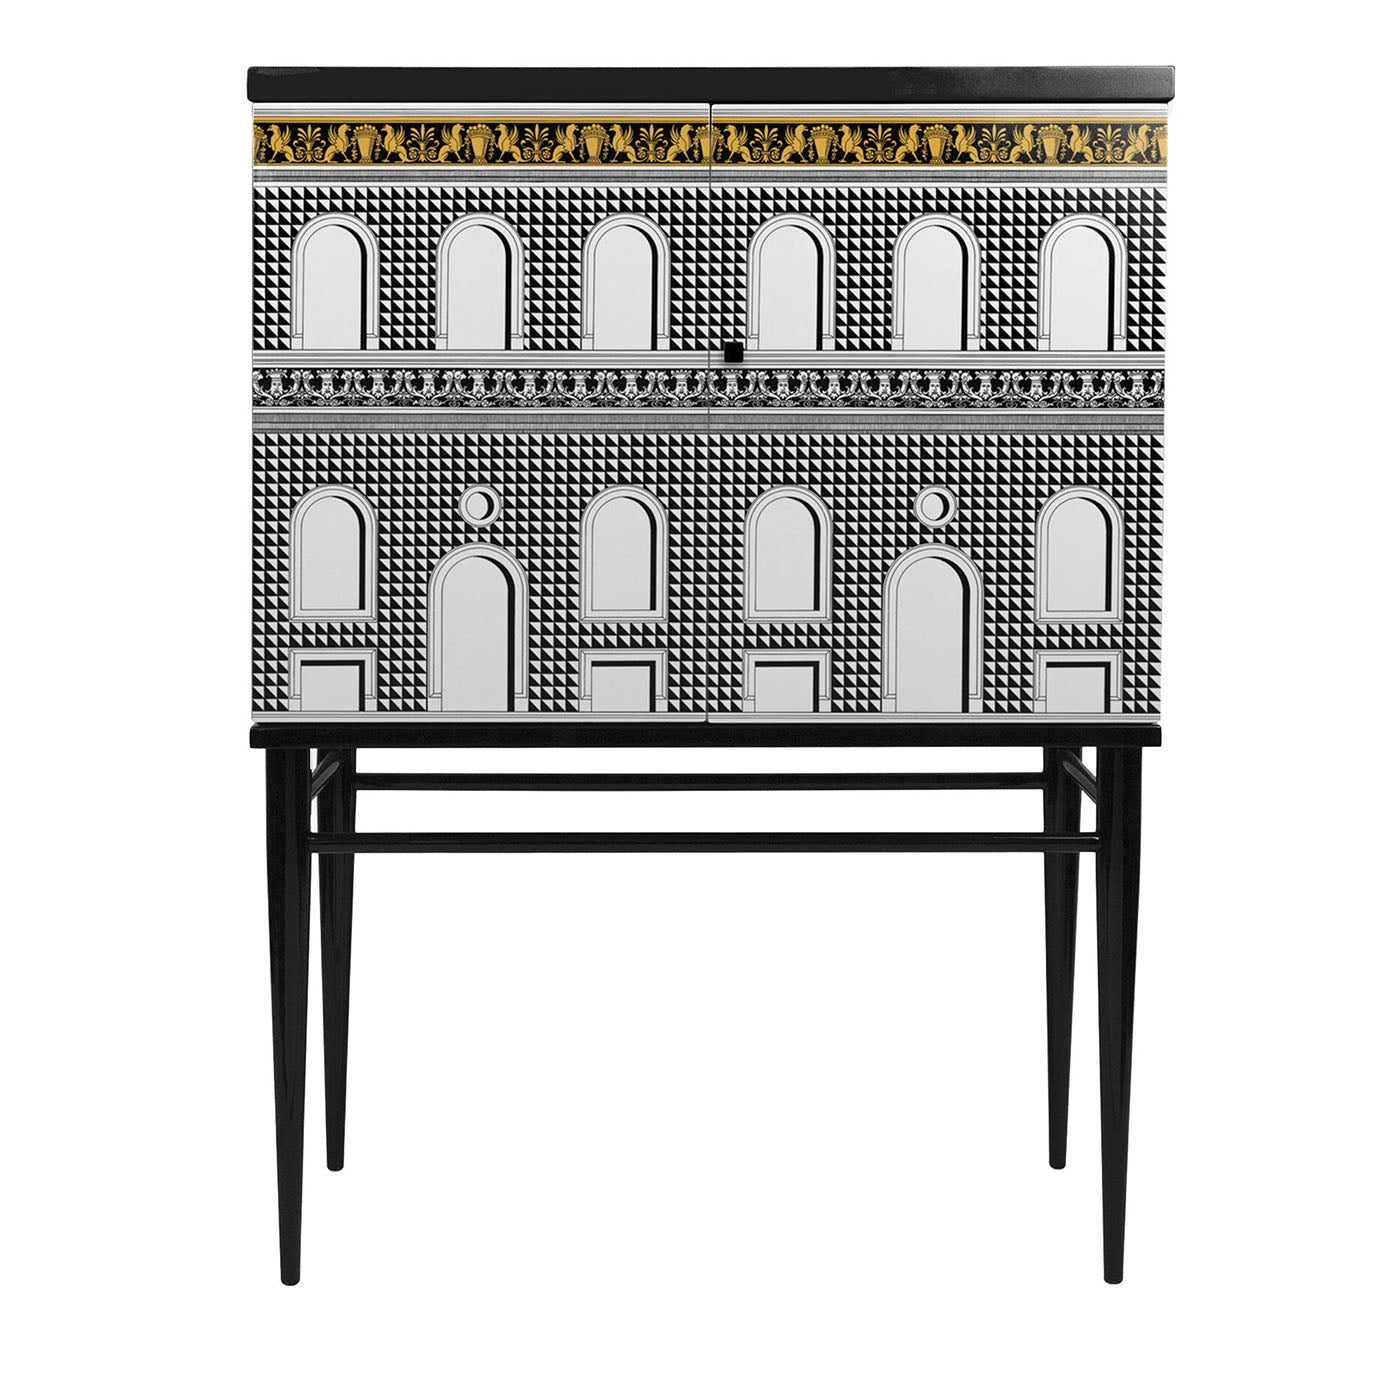 Facciata Quattrocentesca Raised Small Cabinet #1 - Main view